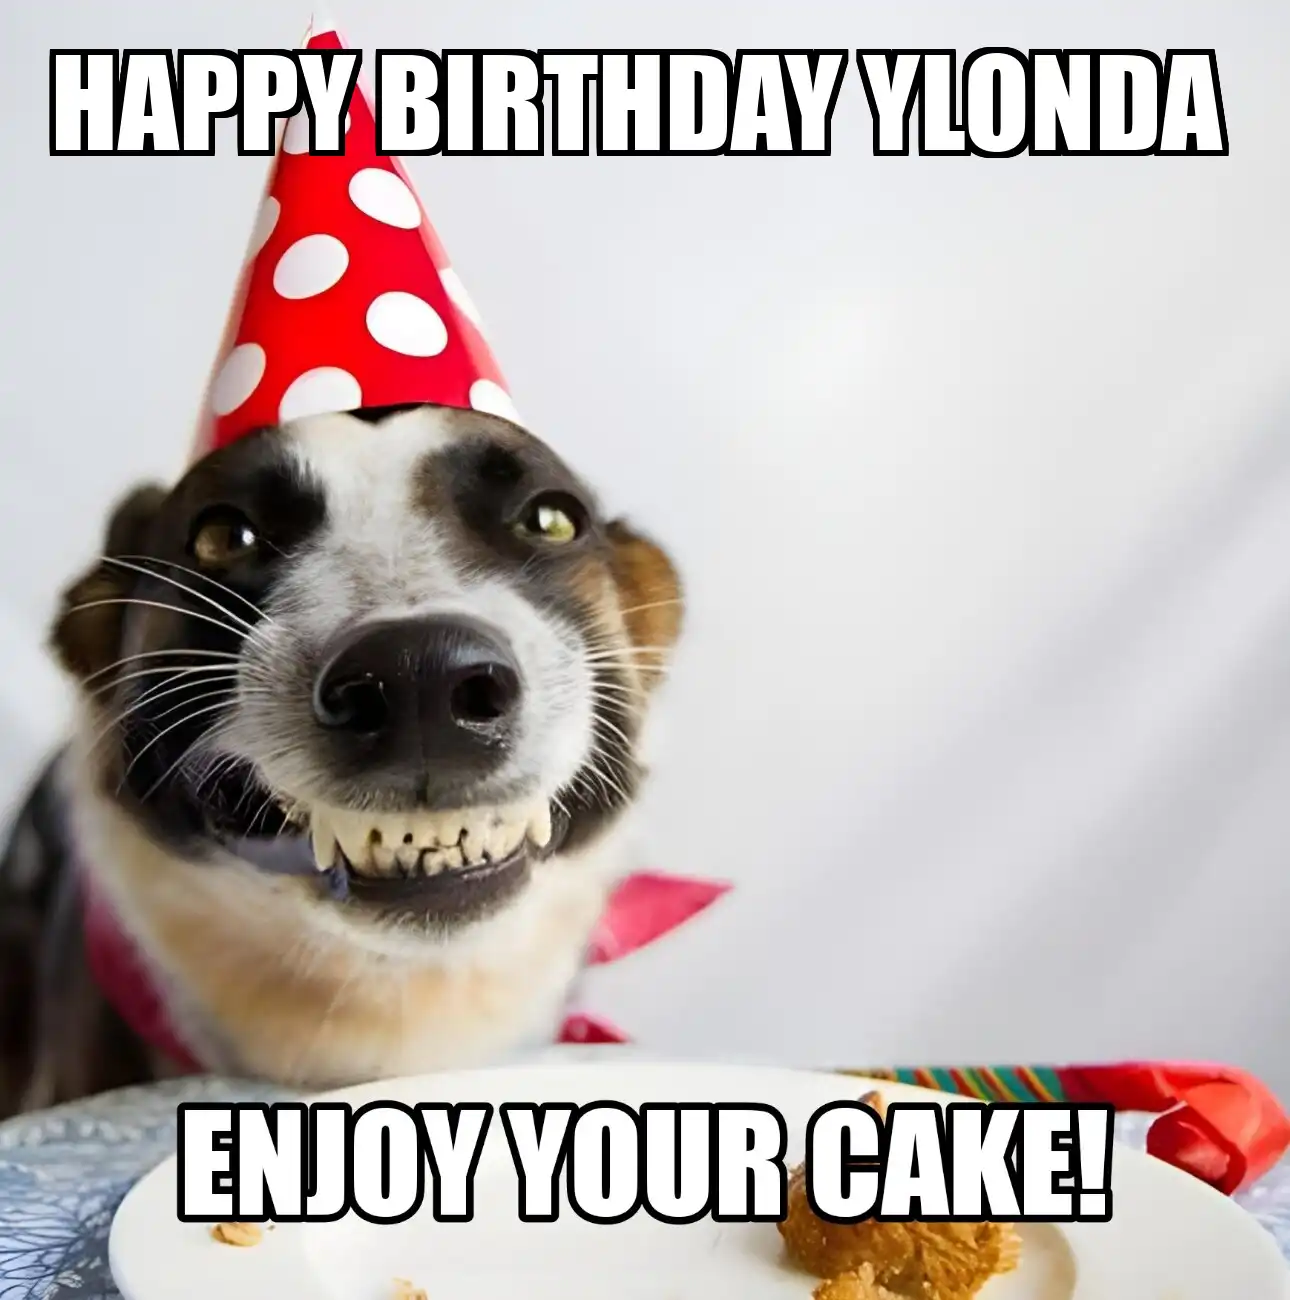 Happy Birthday Ylonda Enjoy Your Cake Dog Meme